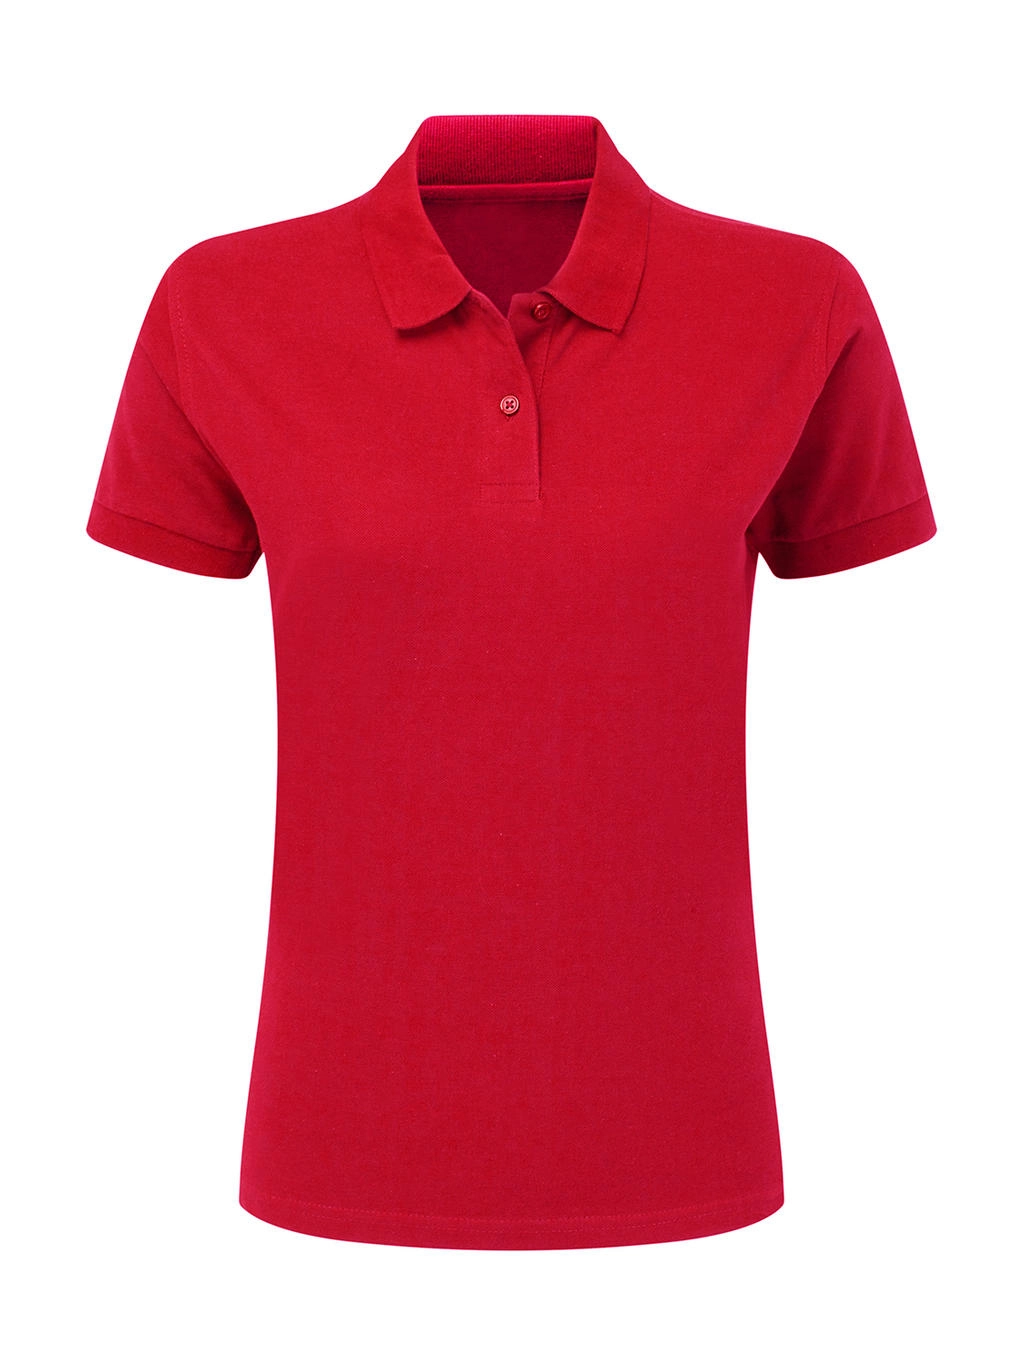 Cotton Polo Women zum Besticken und Bedrucken in der Farbe Red mit Ihren Logo, Schriftzug oder Motiv.